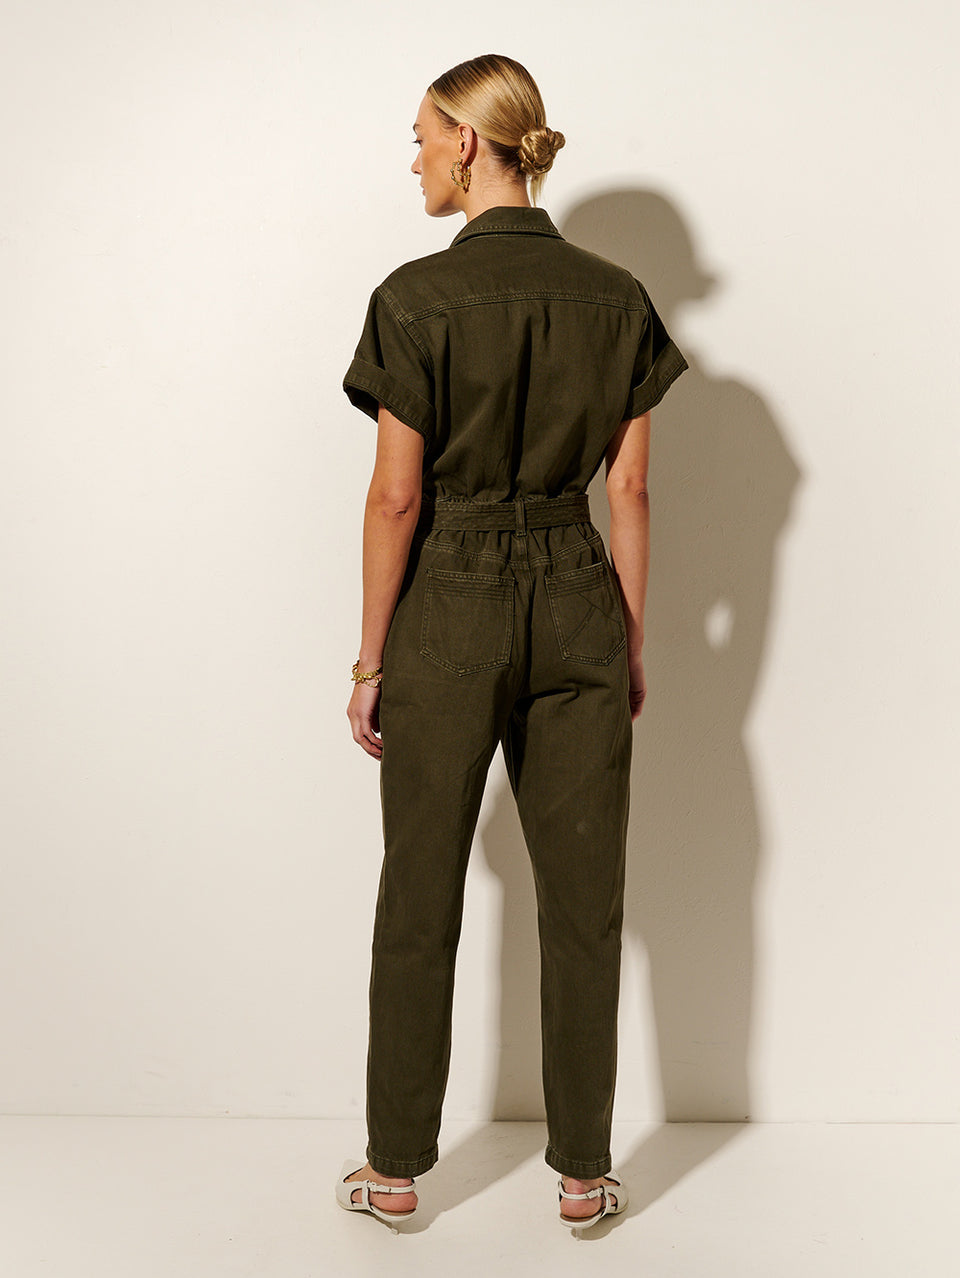 KIVARI Tahlia Boilersuit | Model wears Dark Khaki Boilersuit Back View